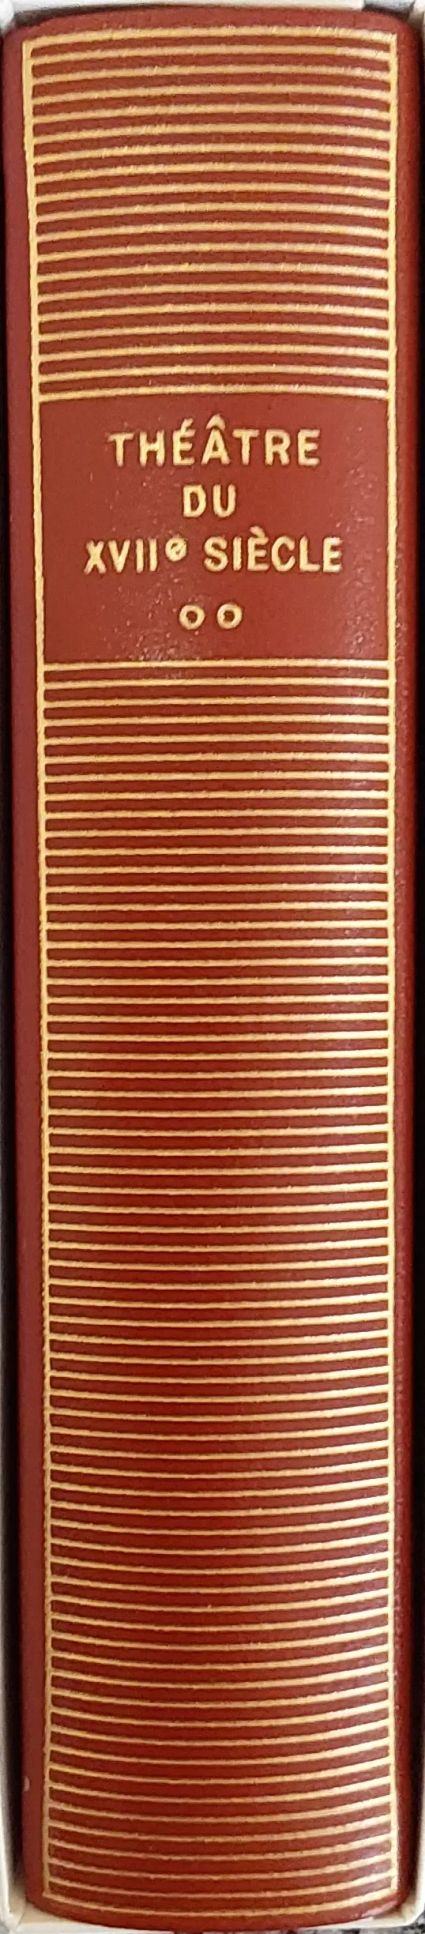 Volume 330 de Collectifs du XVIIeme dans la Bibliothèque de la Pléiade.